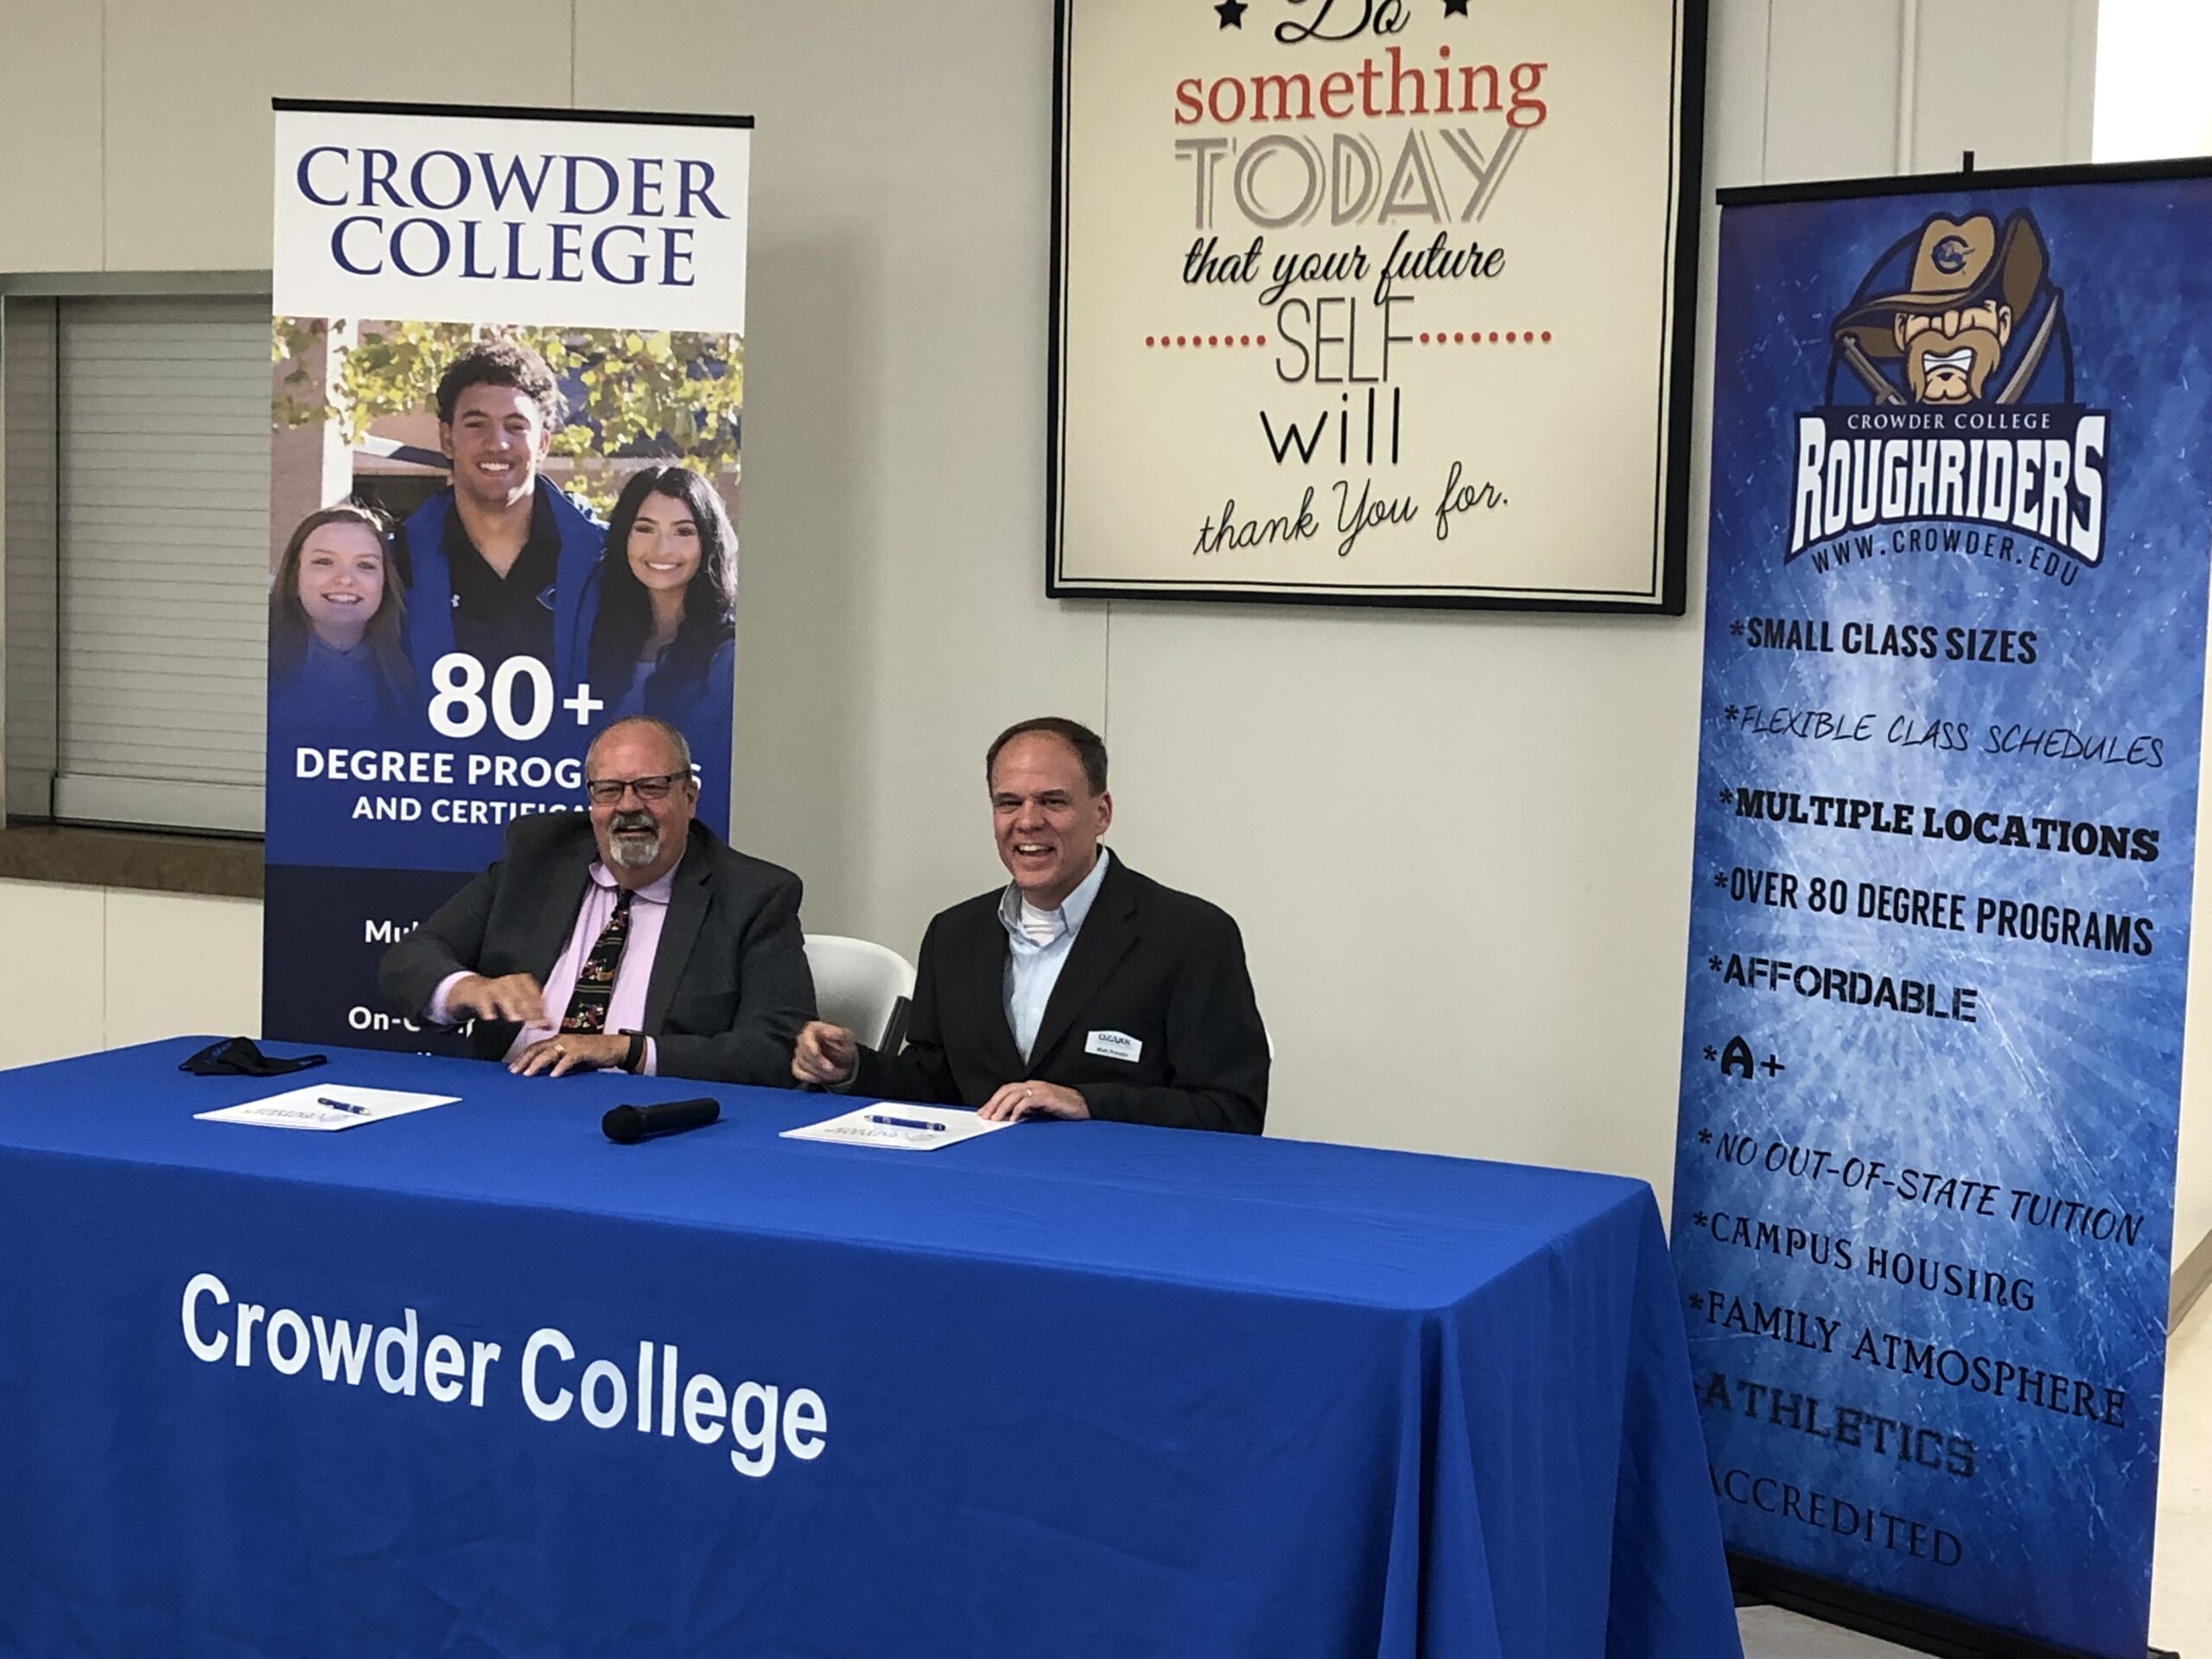 (L-R): Dr. Glenn Coltharp, President, Crowder College & Matt Proctor, President, Ozark Christian College